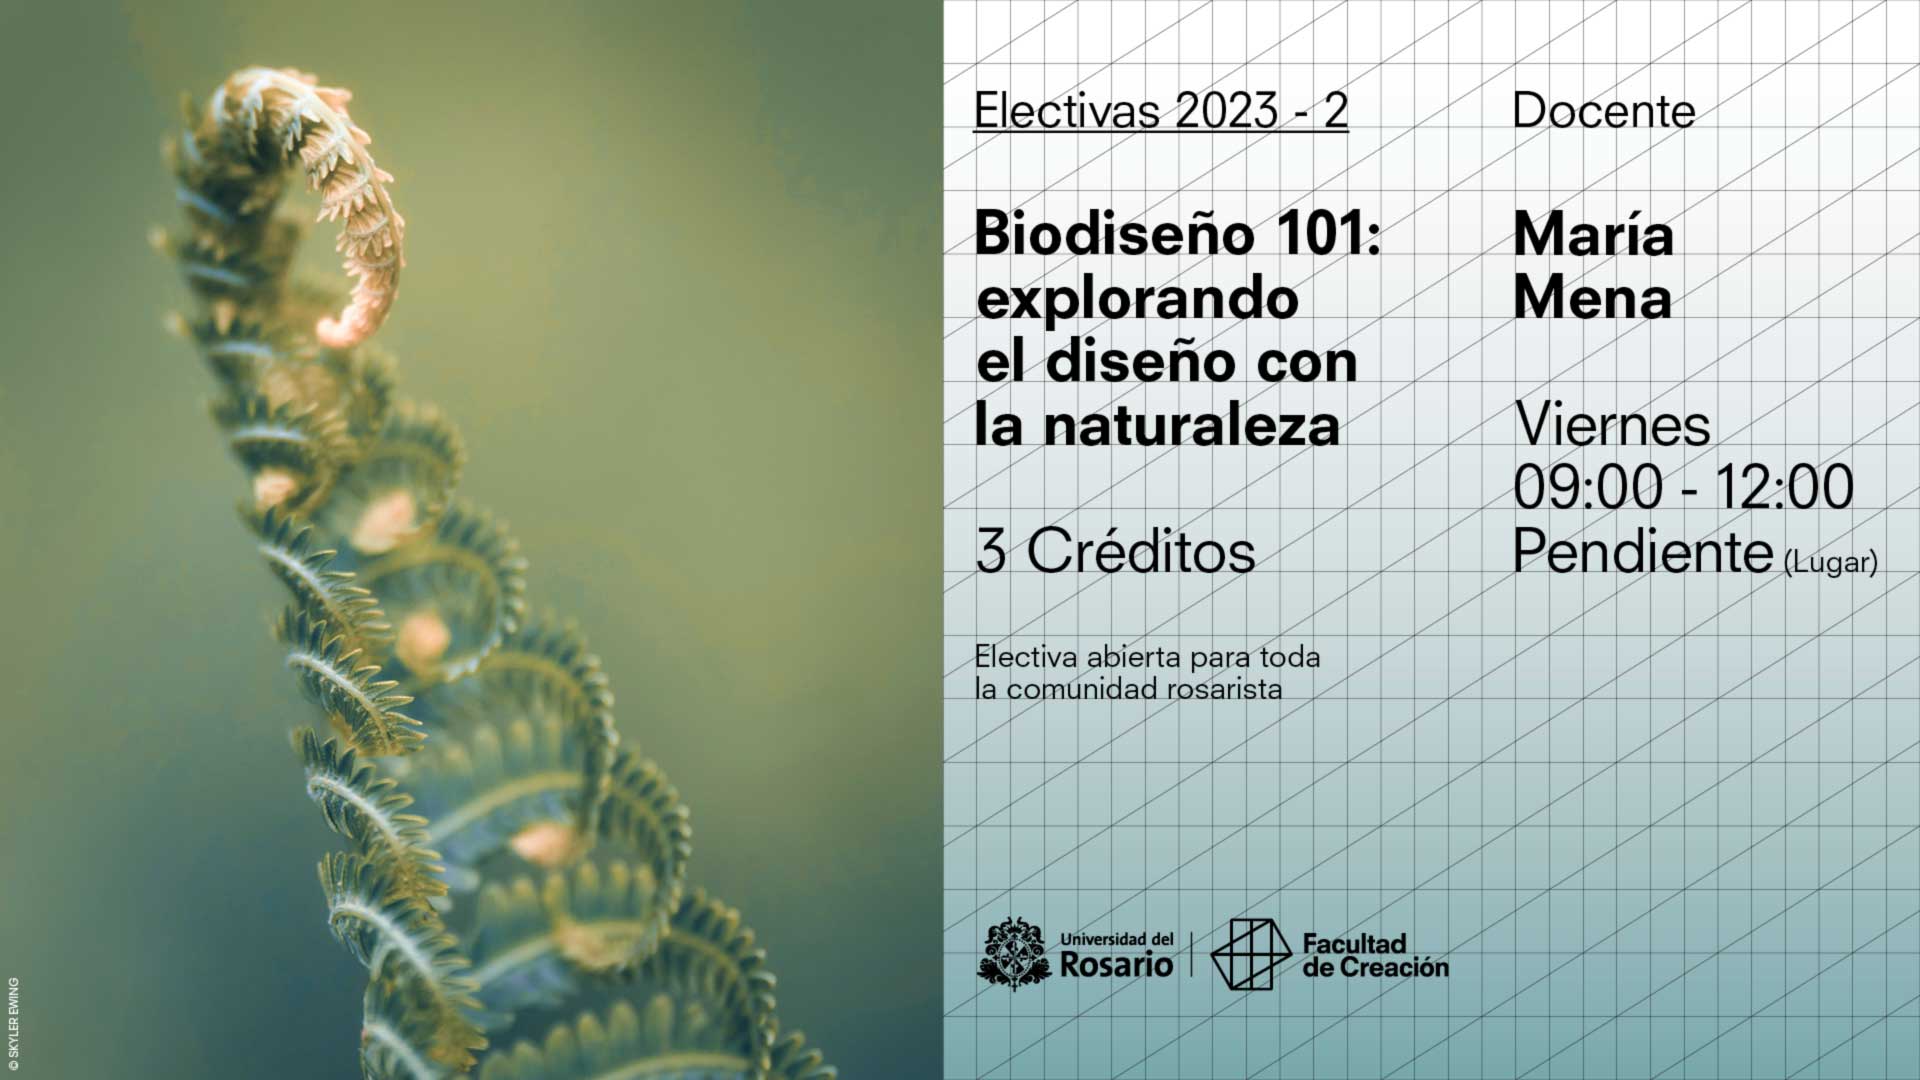 Biodiseño 101: explorando el diseño con la naturaleza